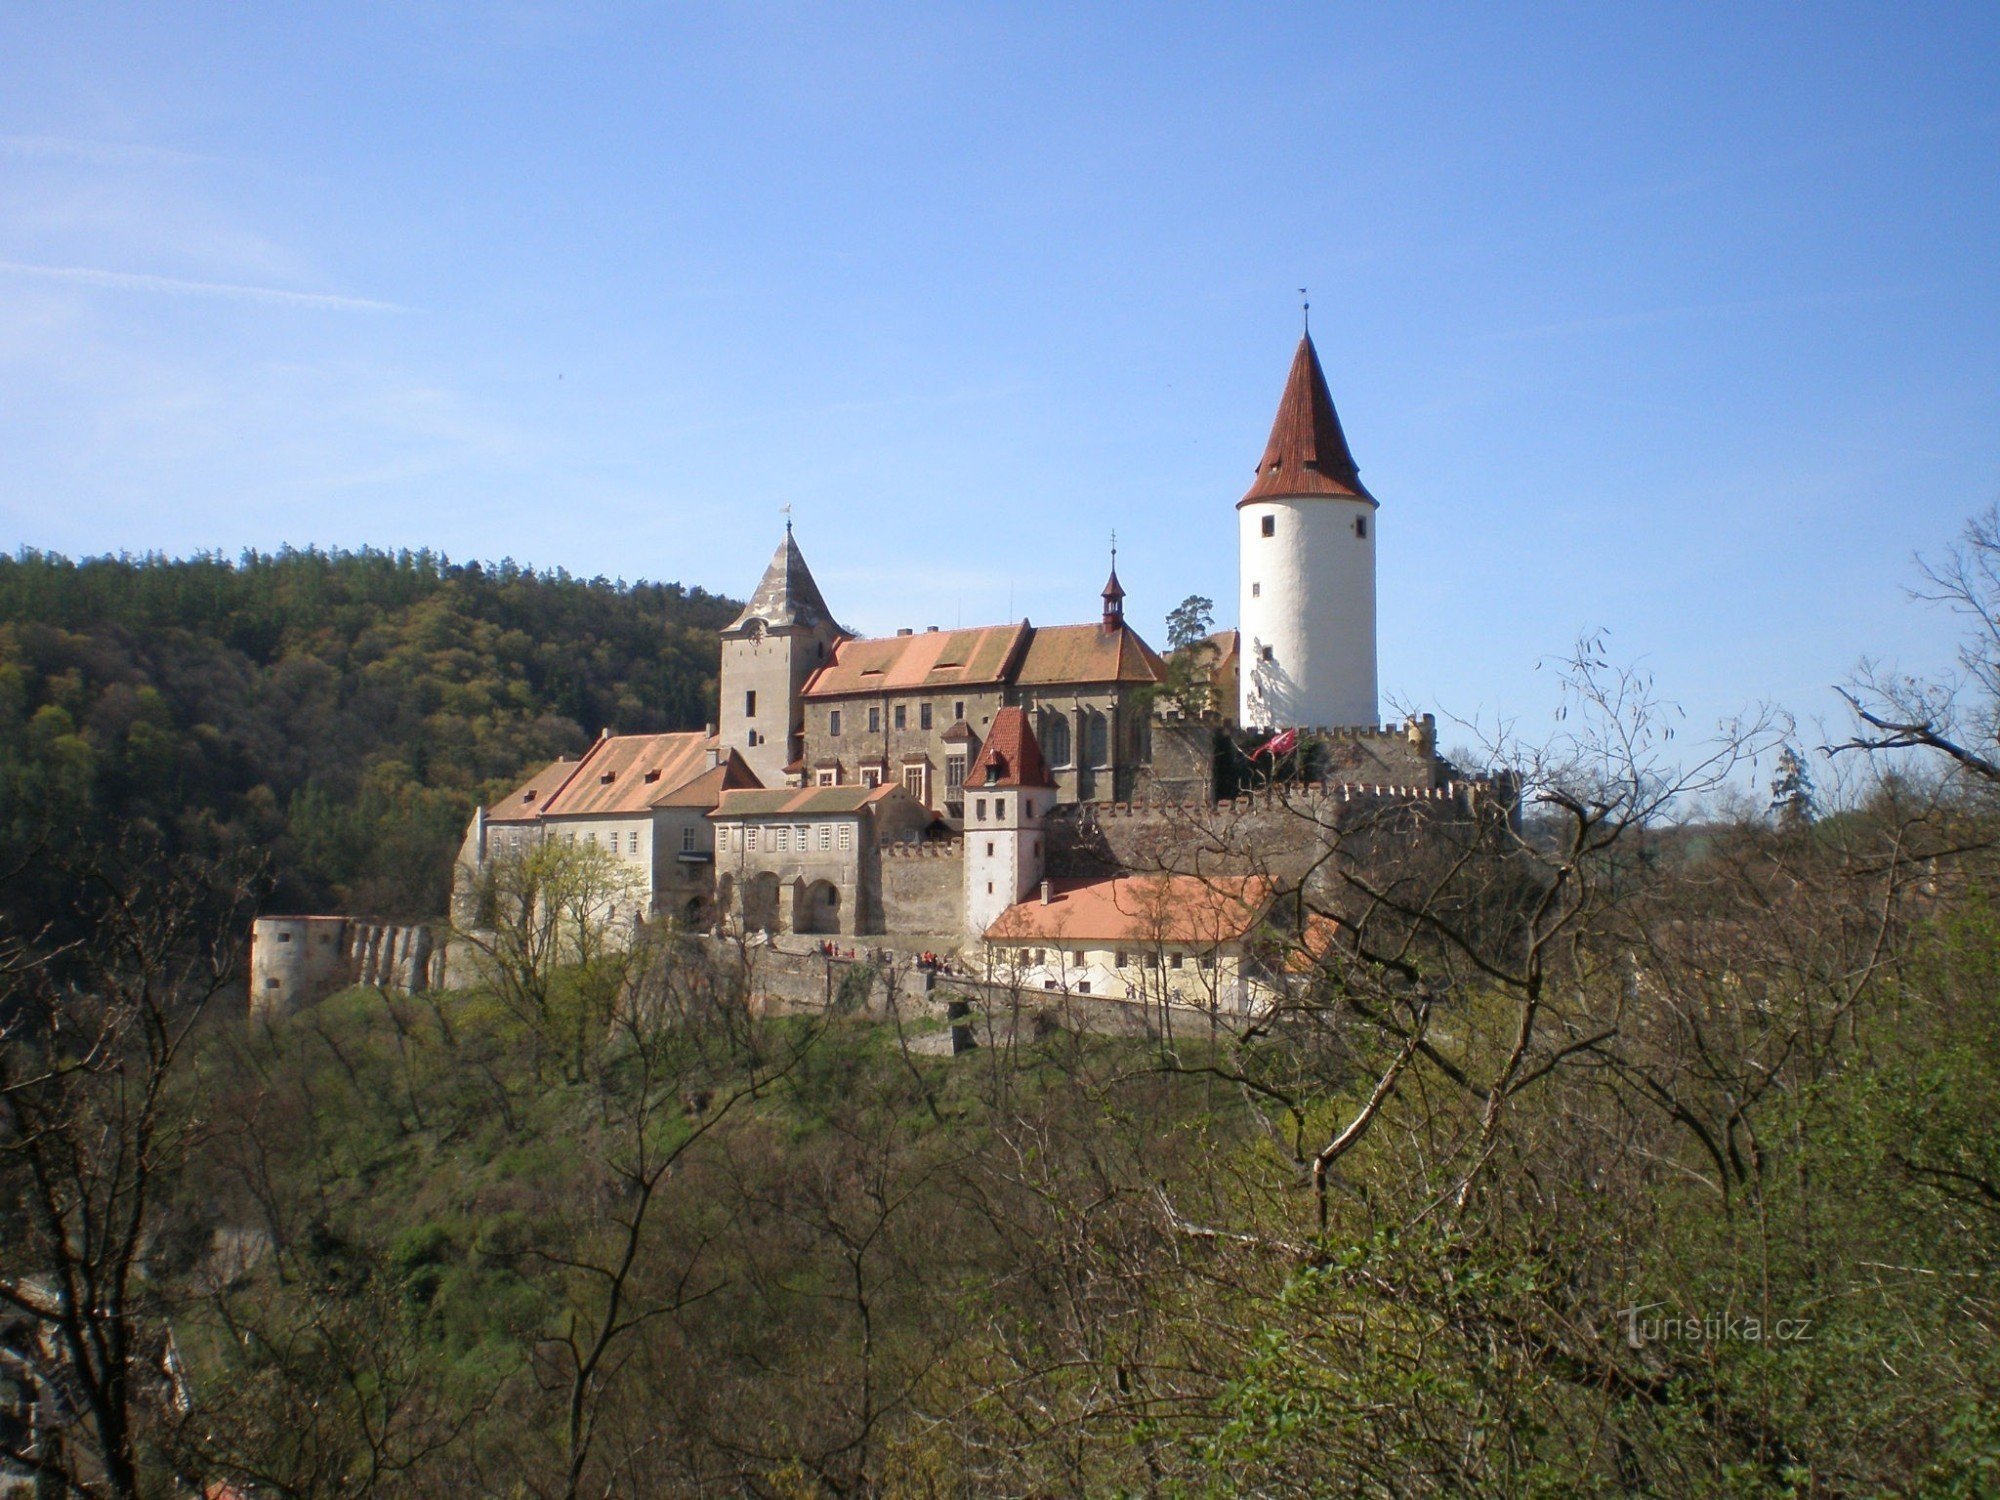 Křivoklát - lâu đài